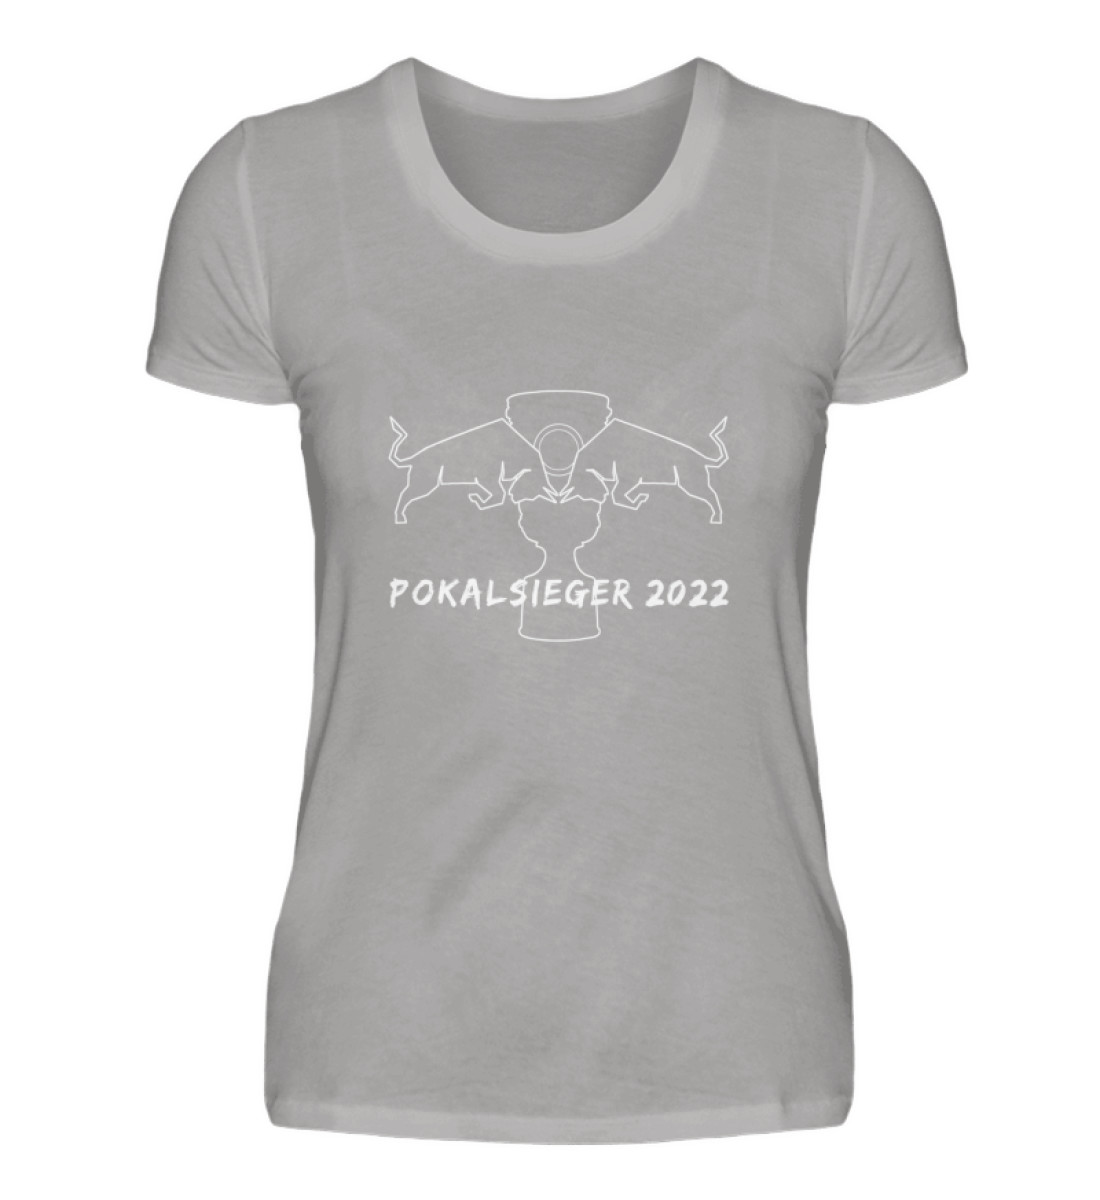 Pokalsieger 2022 - Damen Premiumshirt-2998